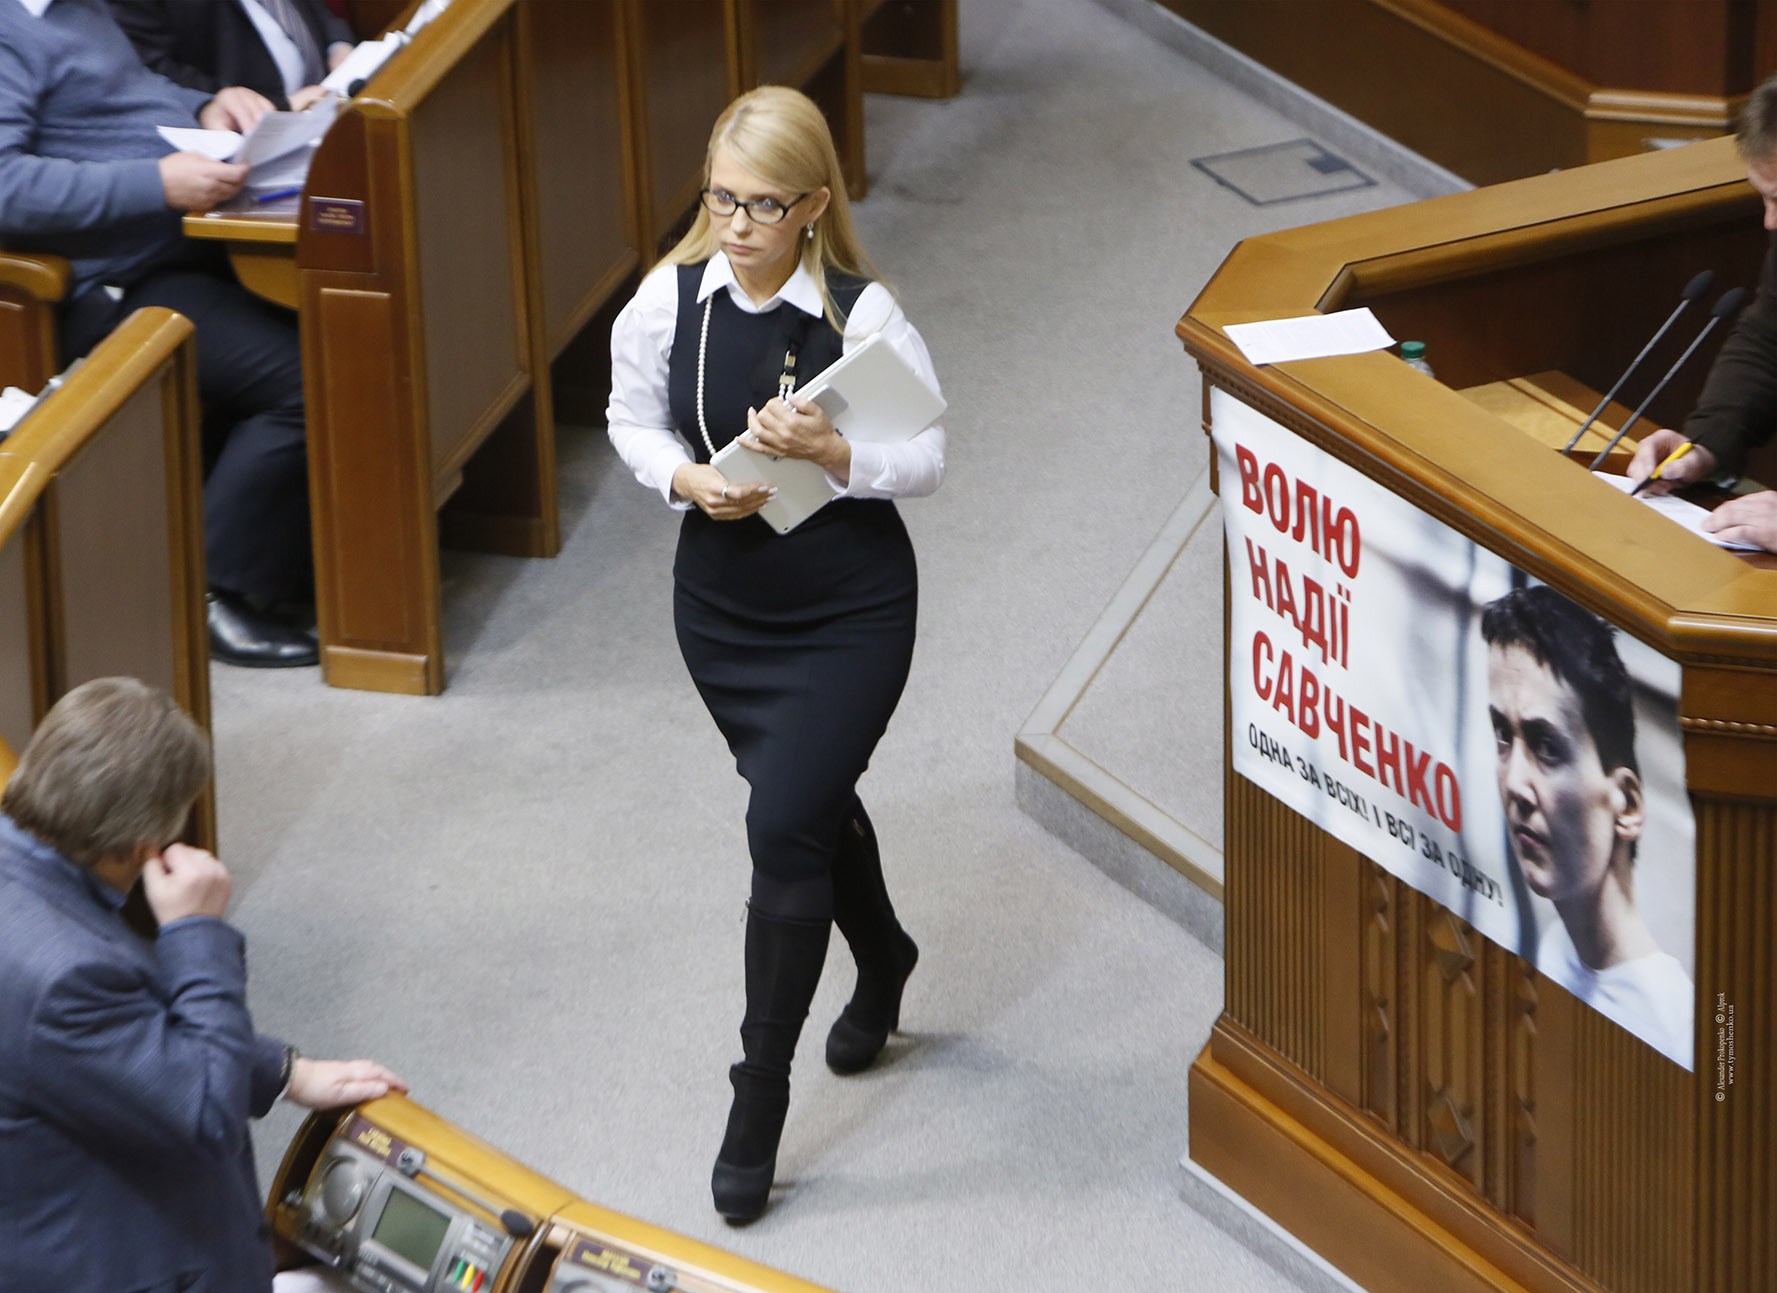 Попавшее в интернет порно фото Юли Тимошенко вызвало скандал в обществе